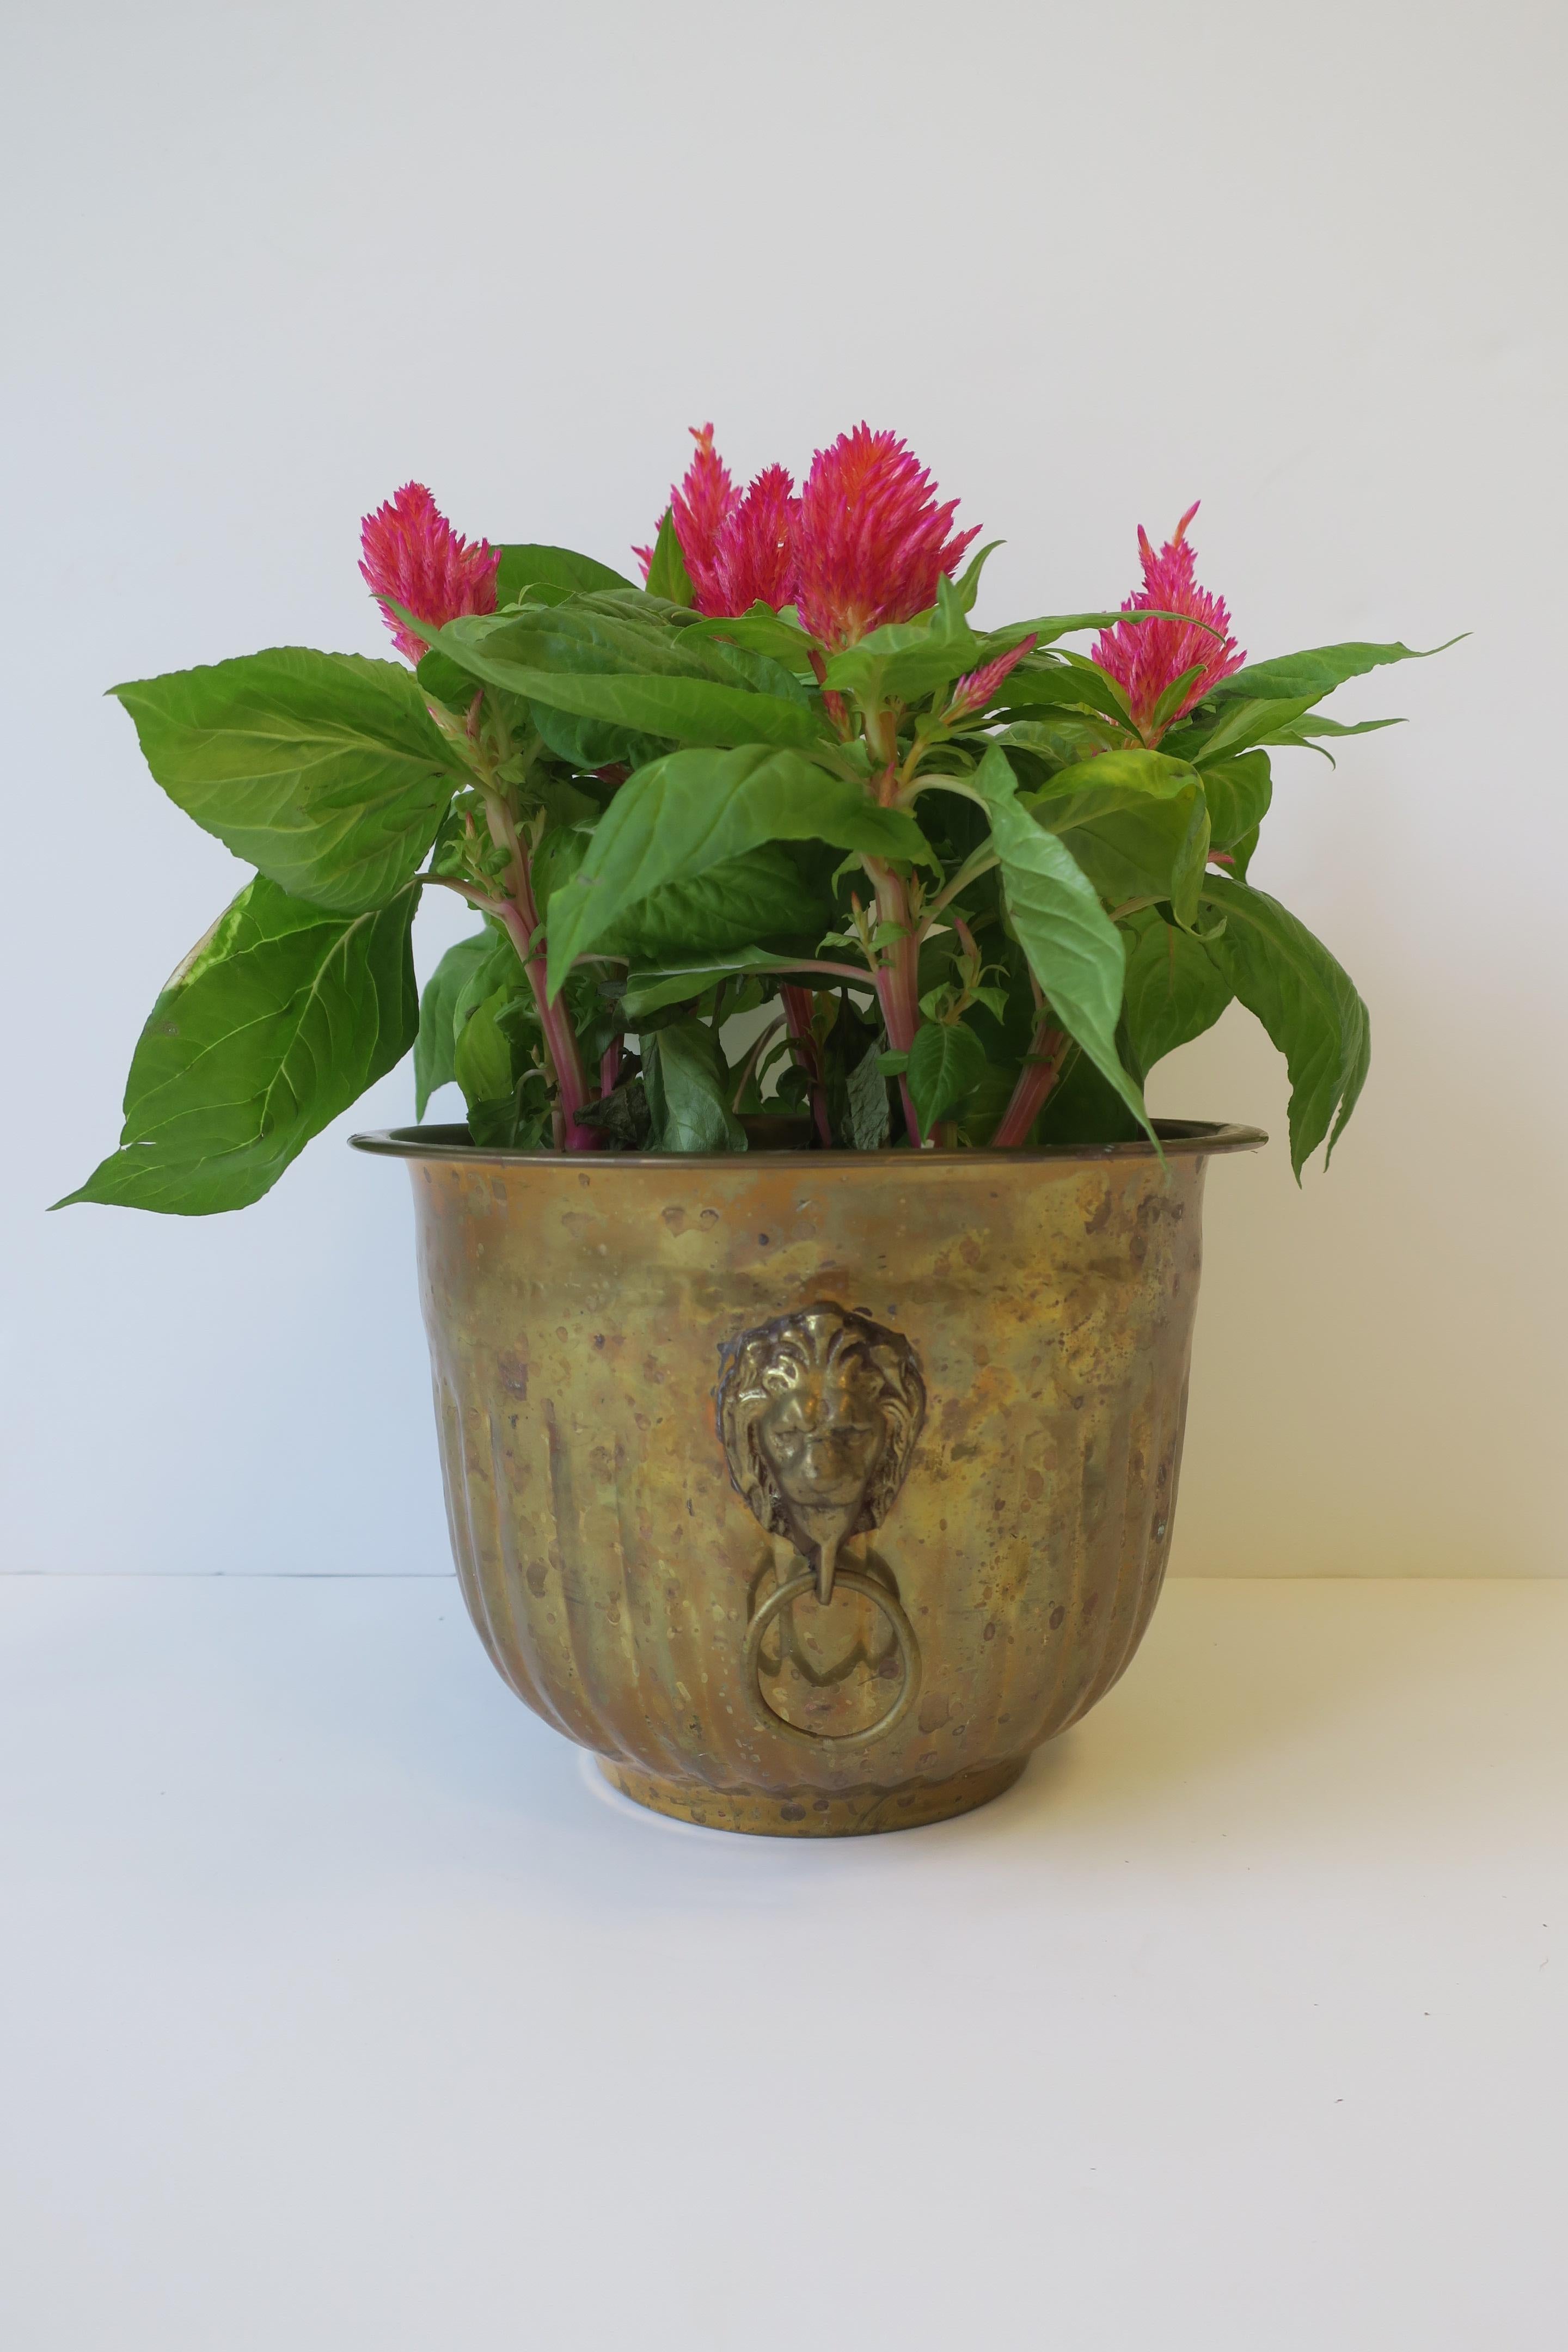 Brass Flower Plant Holder Cachepot Jardiniere w/Lion Head Design Regency Style 1